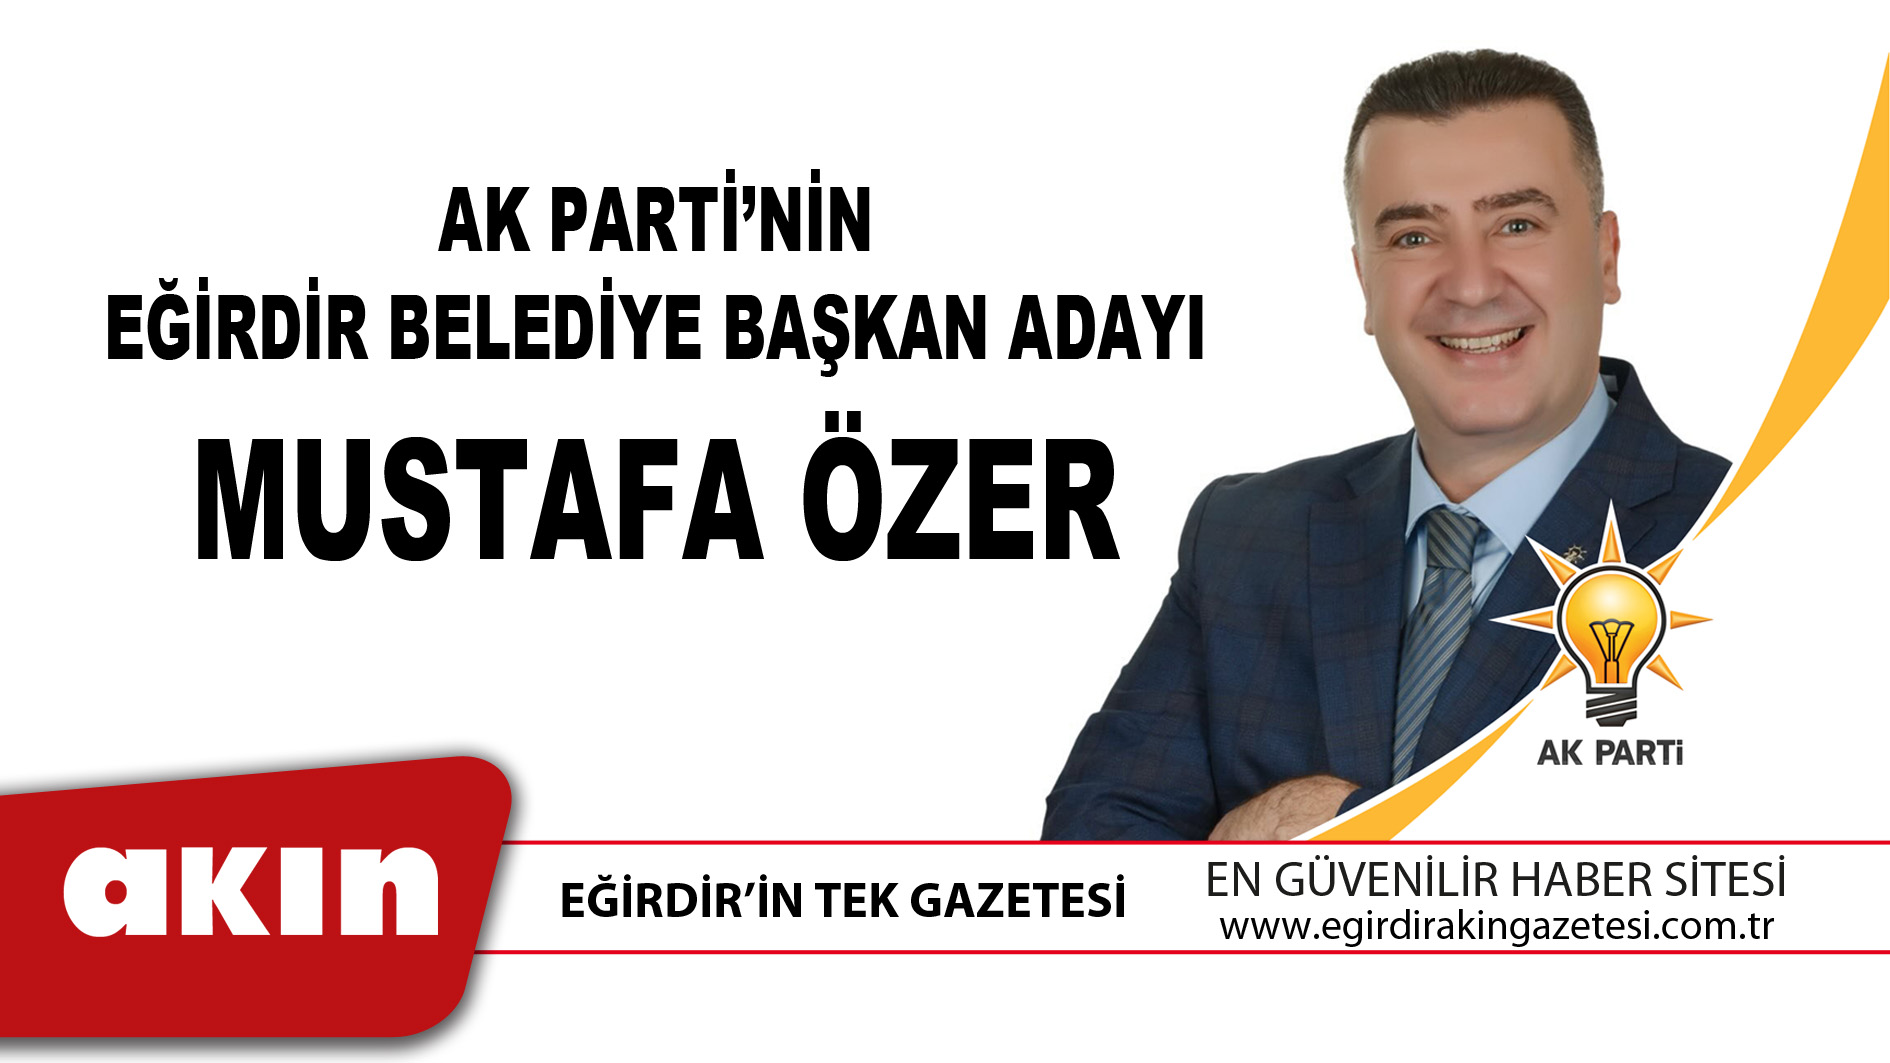 eğirdir haber,akın gazetesi,egirdir haberler,son dakika,Ak Parti’nin Eğirdir Belediye Başkan Adayı Mustafa Özer